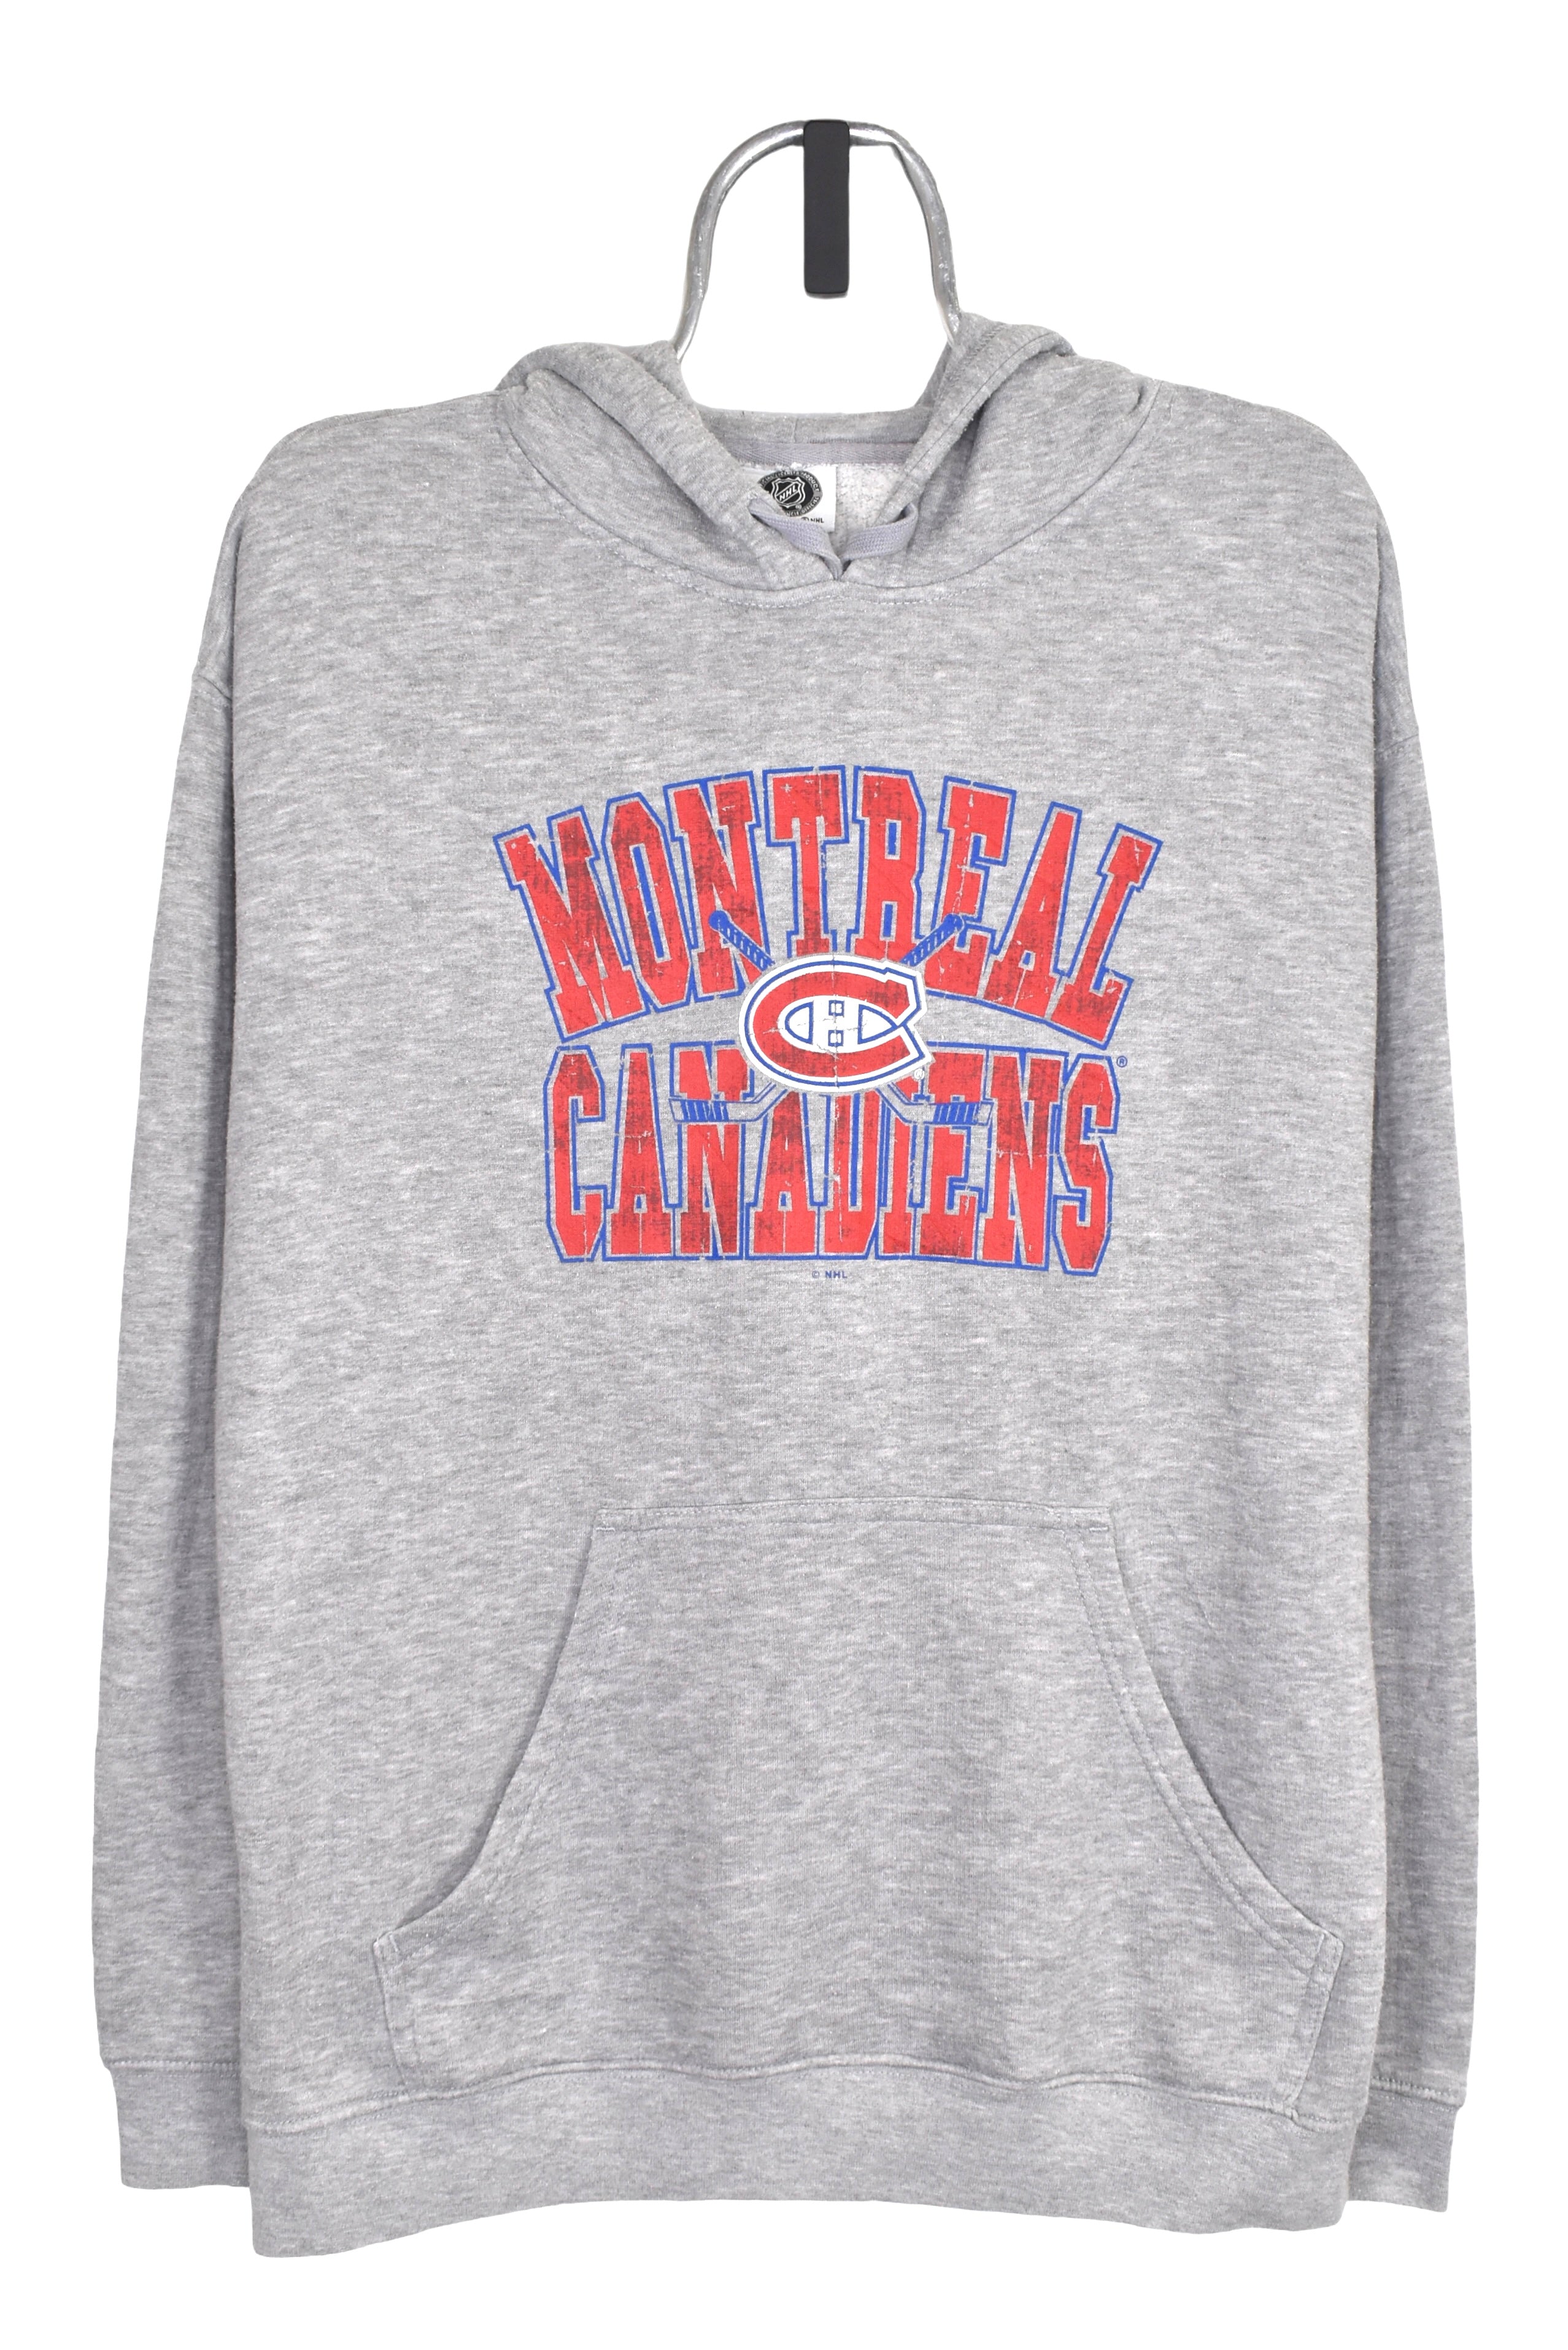 Vintage Montreal Canadiens hoodie (L), grey NHL graphic sweatshirt